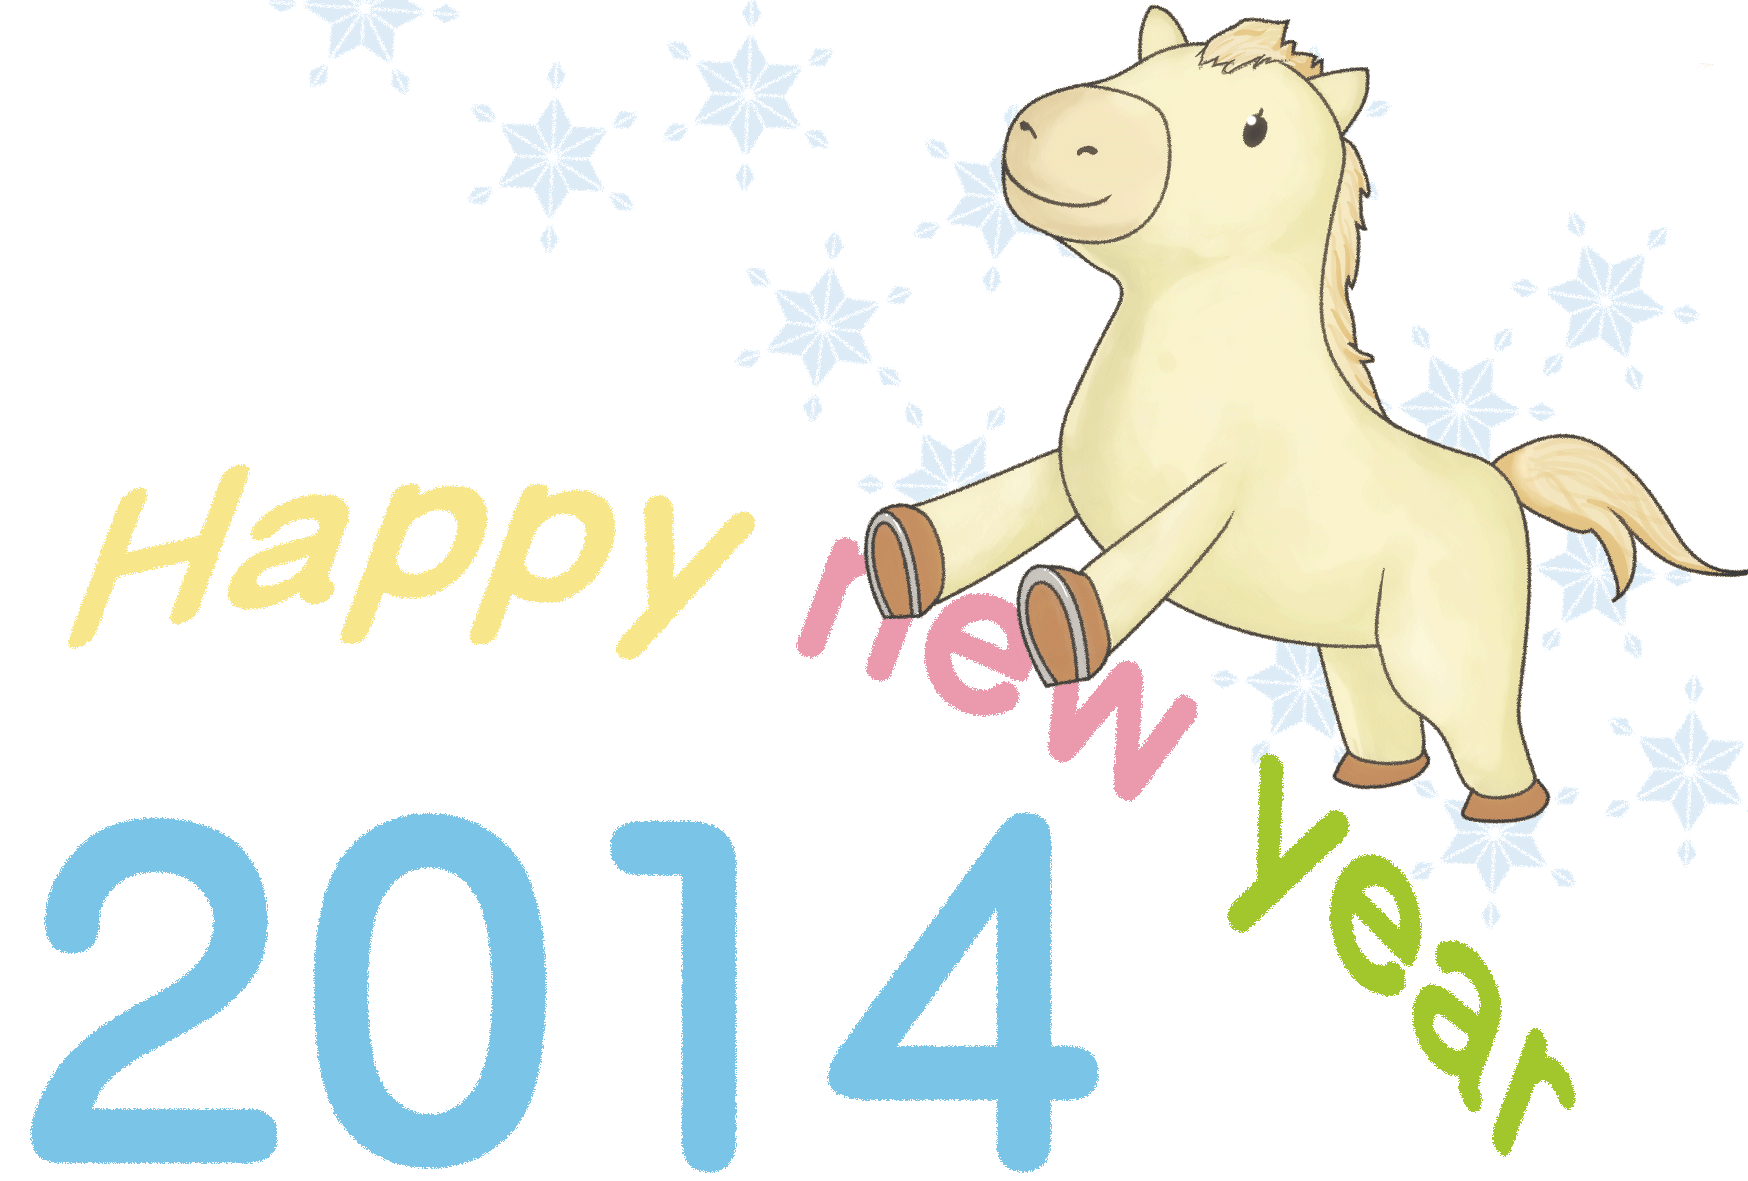 うま年2014年 子馬と雪空 かわいいイラスト年賀状 無料テンプレート素材 子ども年賀状 無料テンプレート素材集